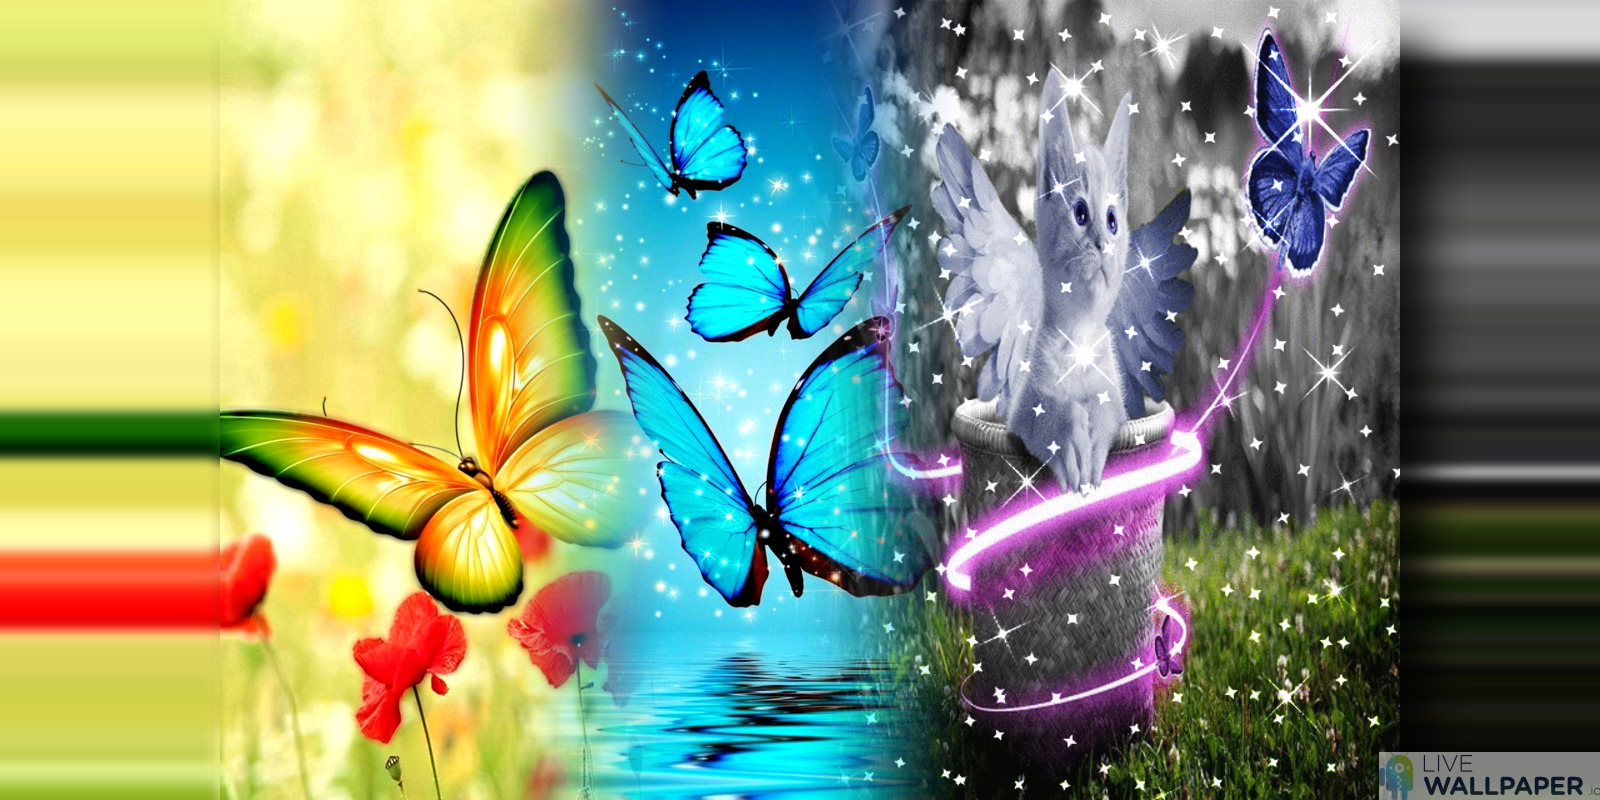 farfalla live wallpaper,la farfalla,natura,disegno grafico,falene e farfalle,insetto